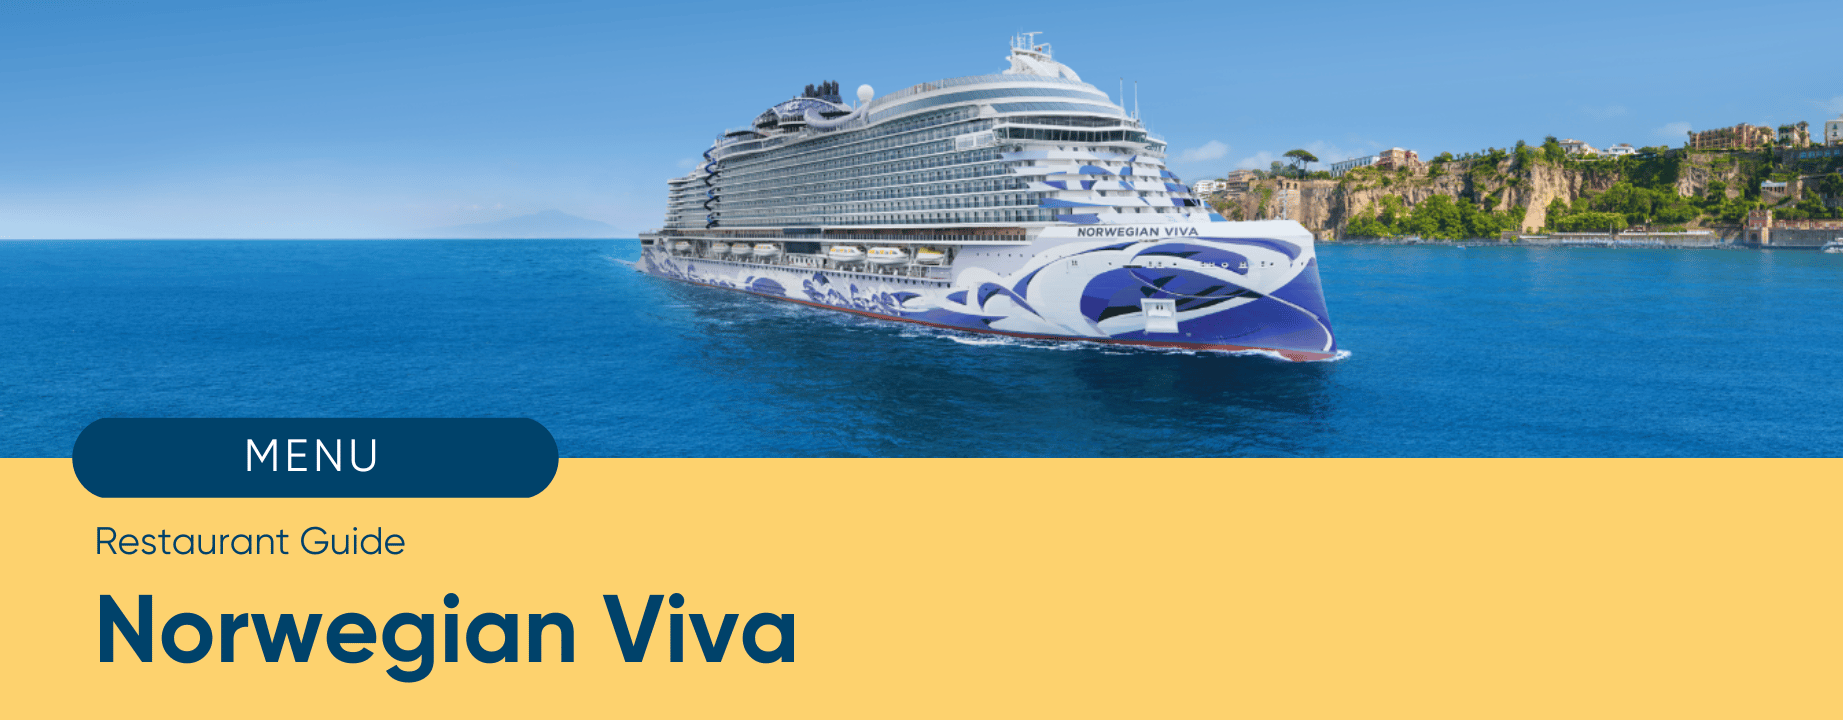 New ship VIVA - Experiences